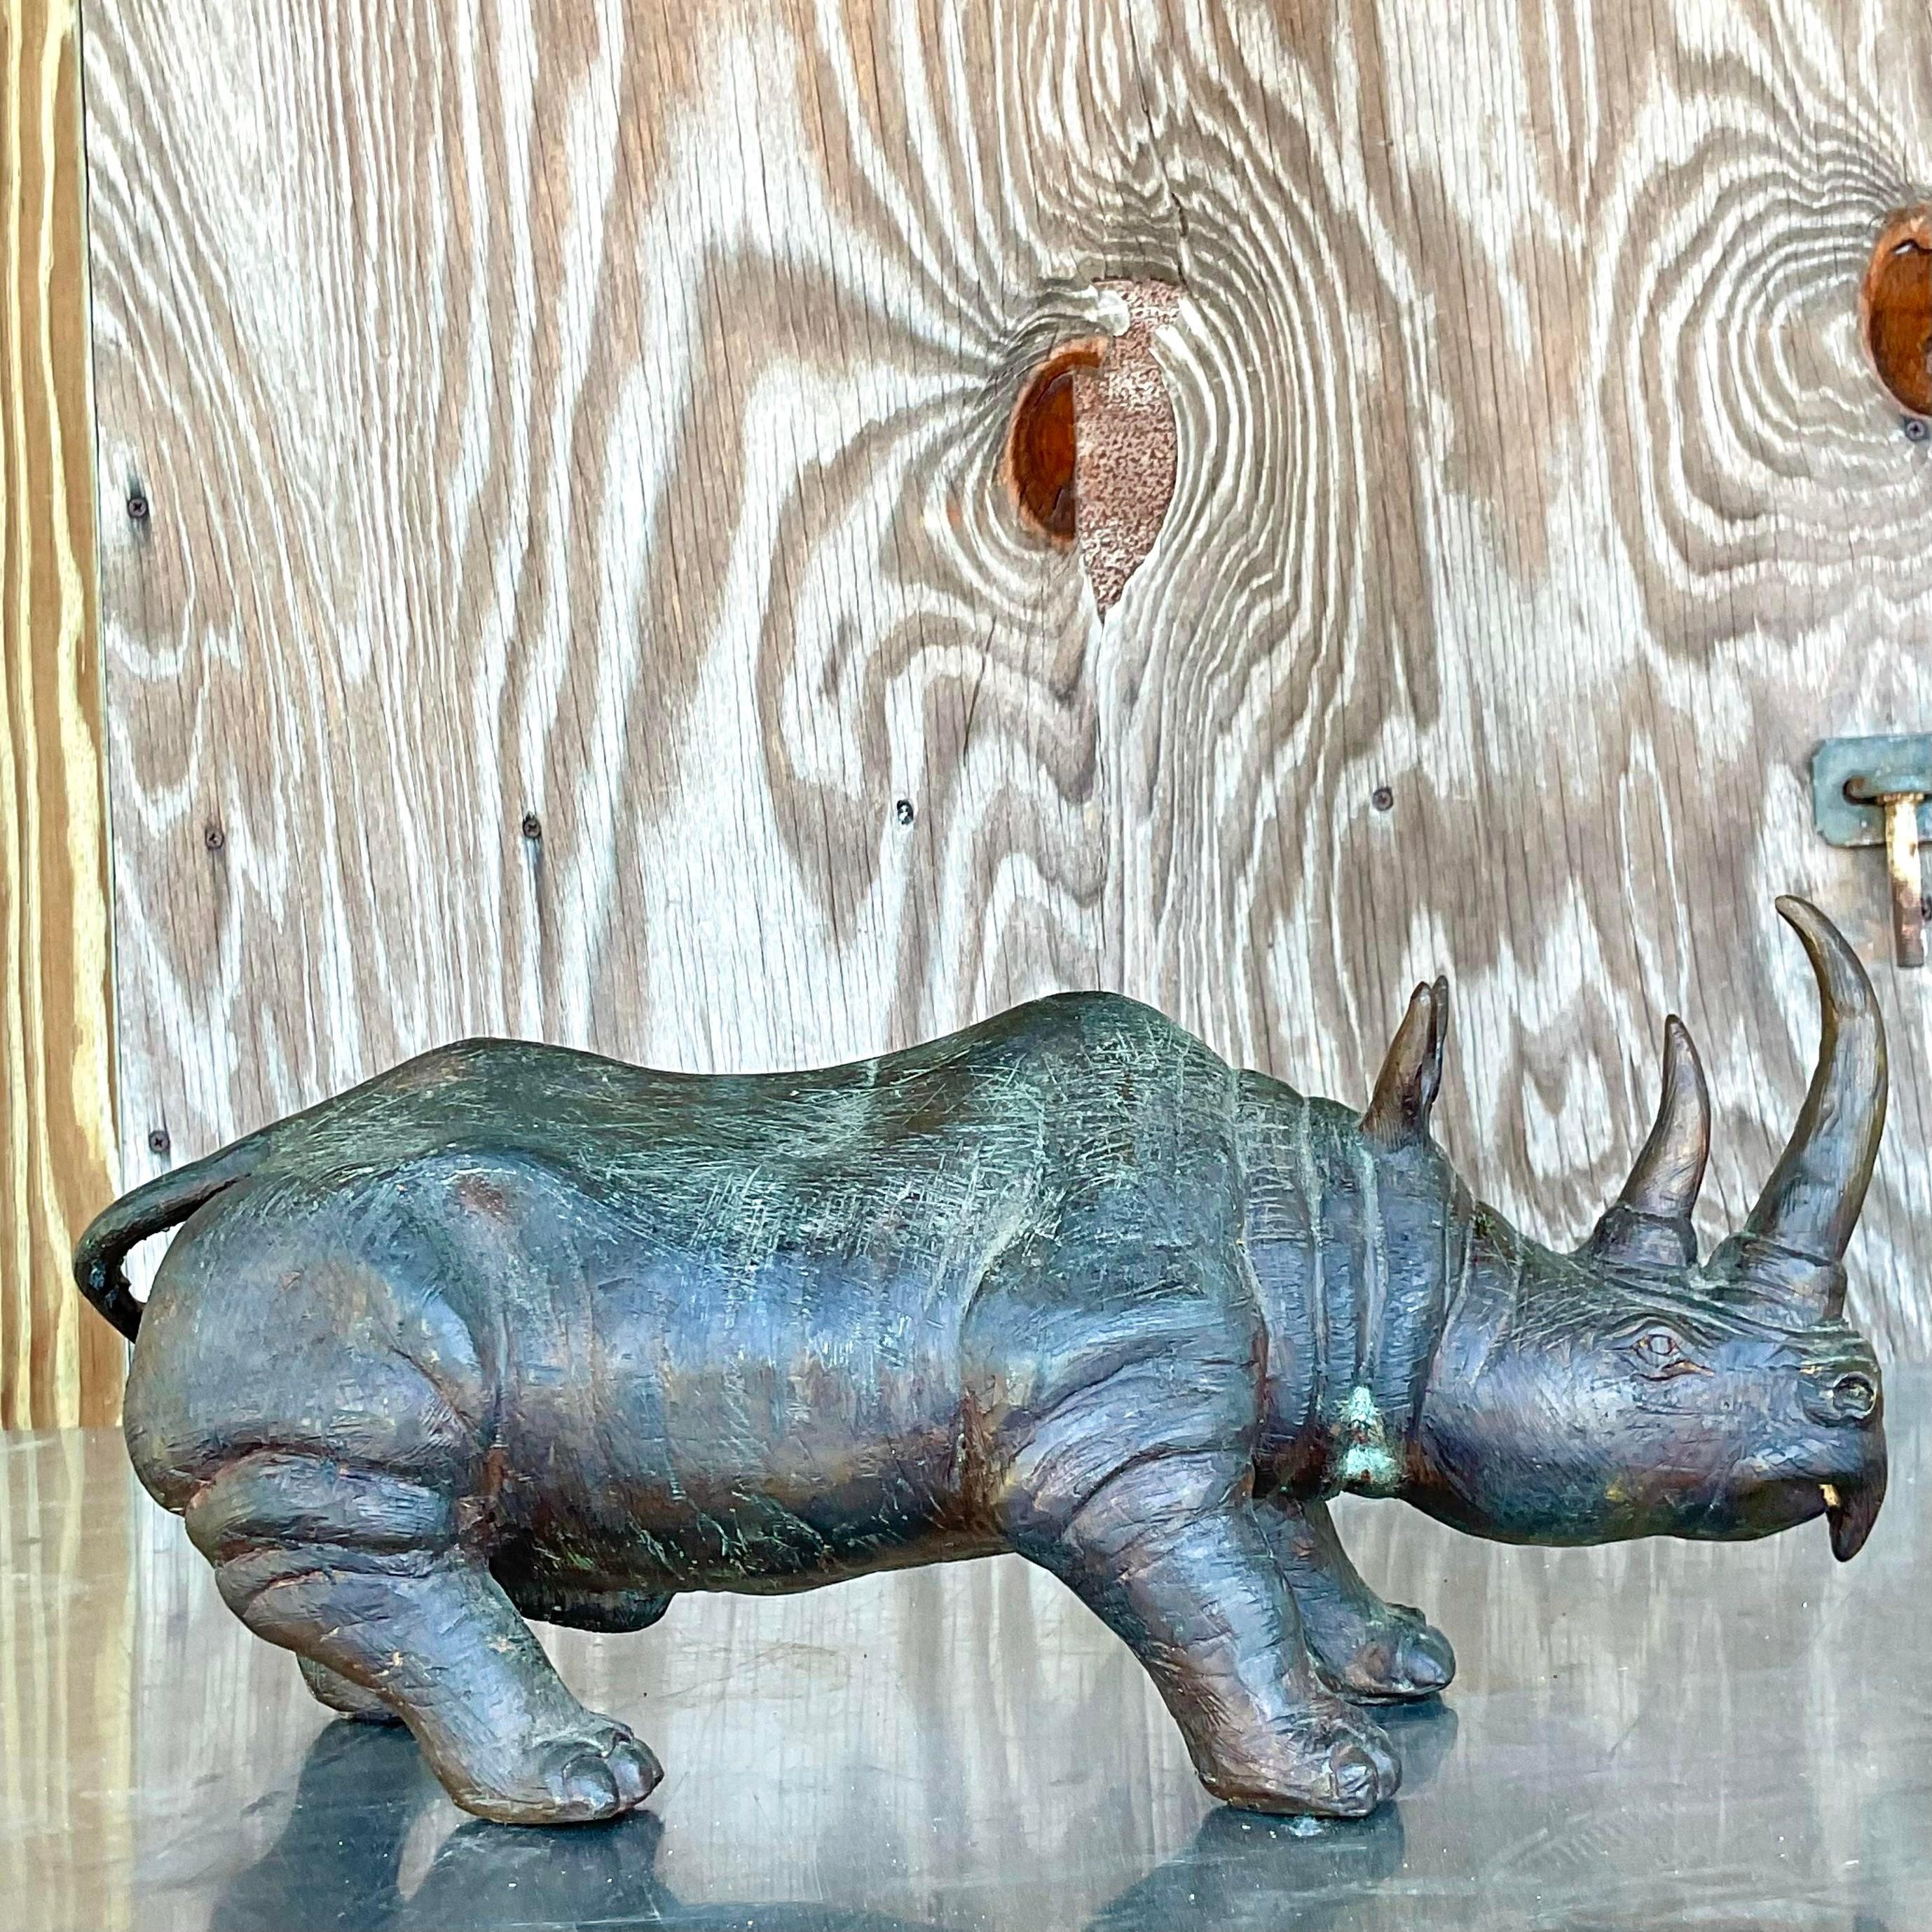 Fantastique statue de bronze vintage. Une composition solide d'un beau rhinocéros. Magnifique attention portée aux détails et patine étonnante au fil du temps. Acquis d'une propriété de Palm Beach. Fantastique statue de bronze vintage. Une